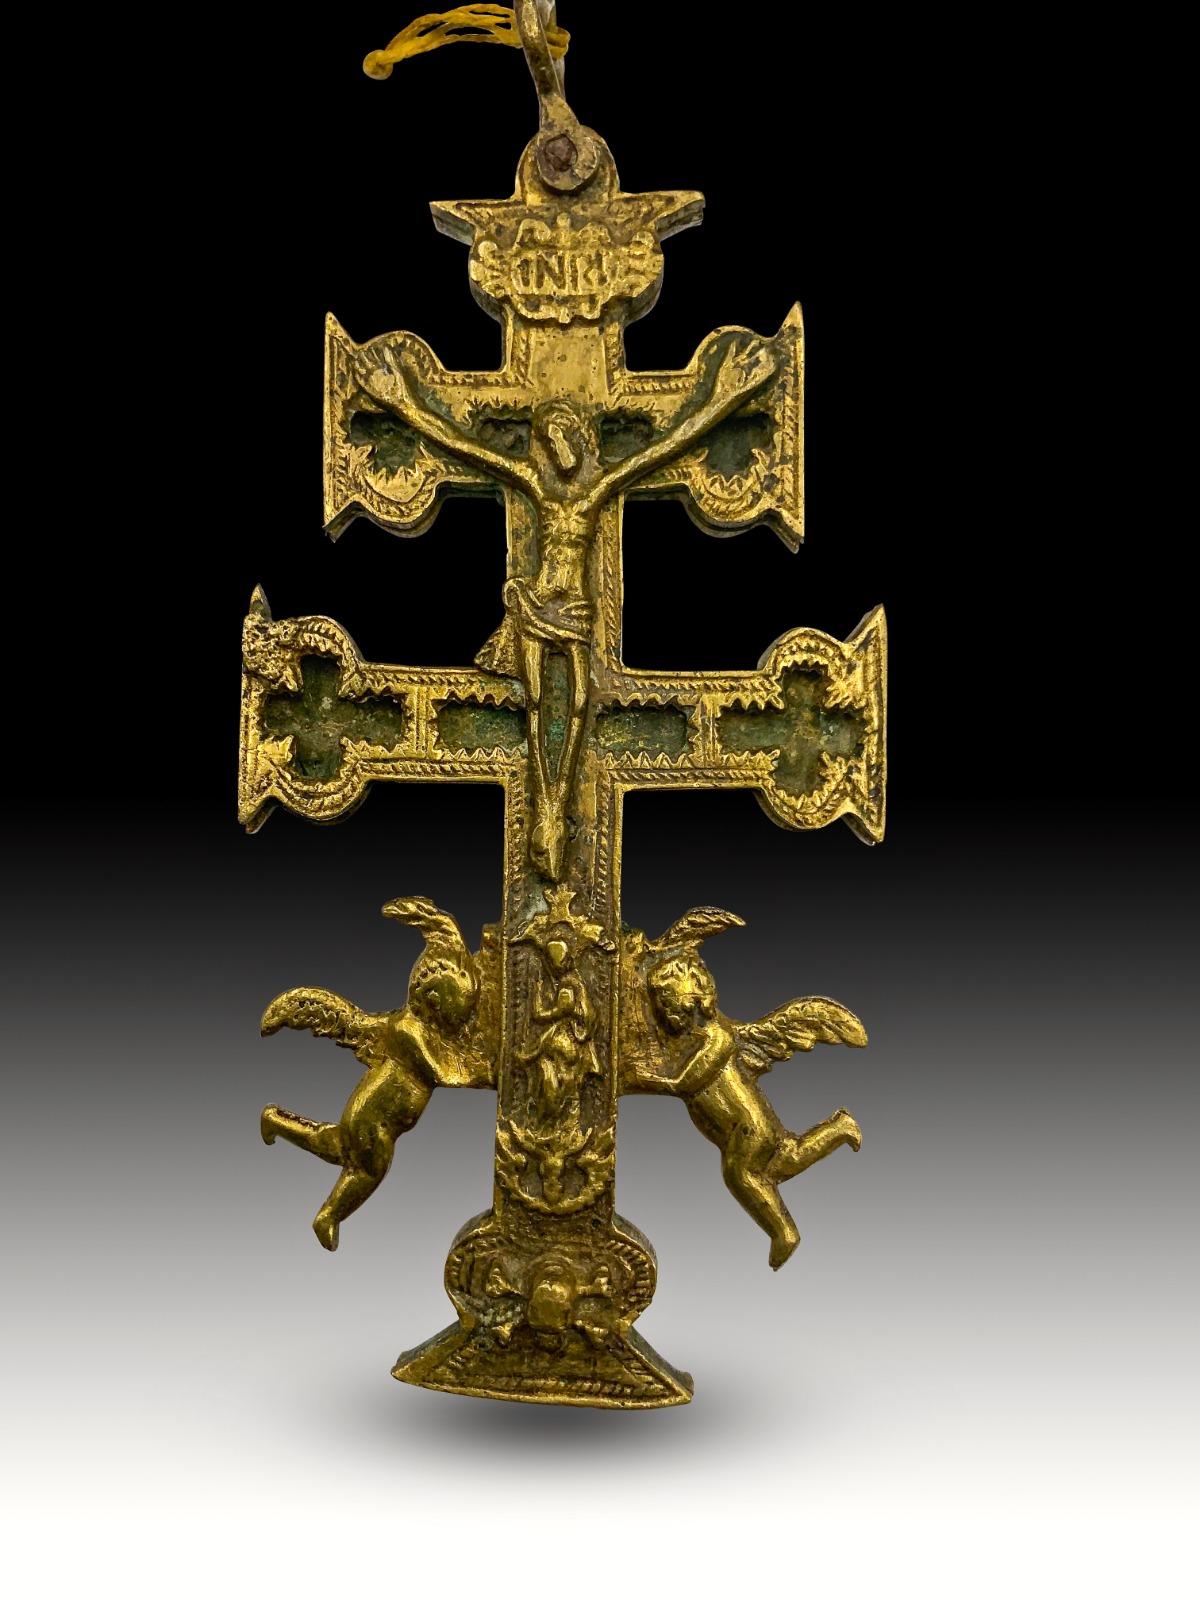 Croix de caravaca XVIIe siècle.
Très belle croix de caravaca en bronze. 17ème siècle. Dimensions : 15x6 cm.
Bon état.